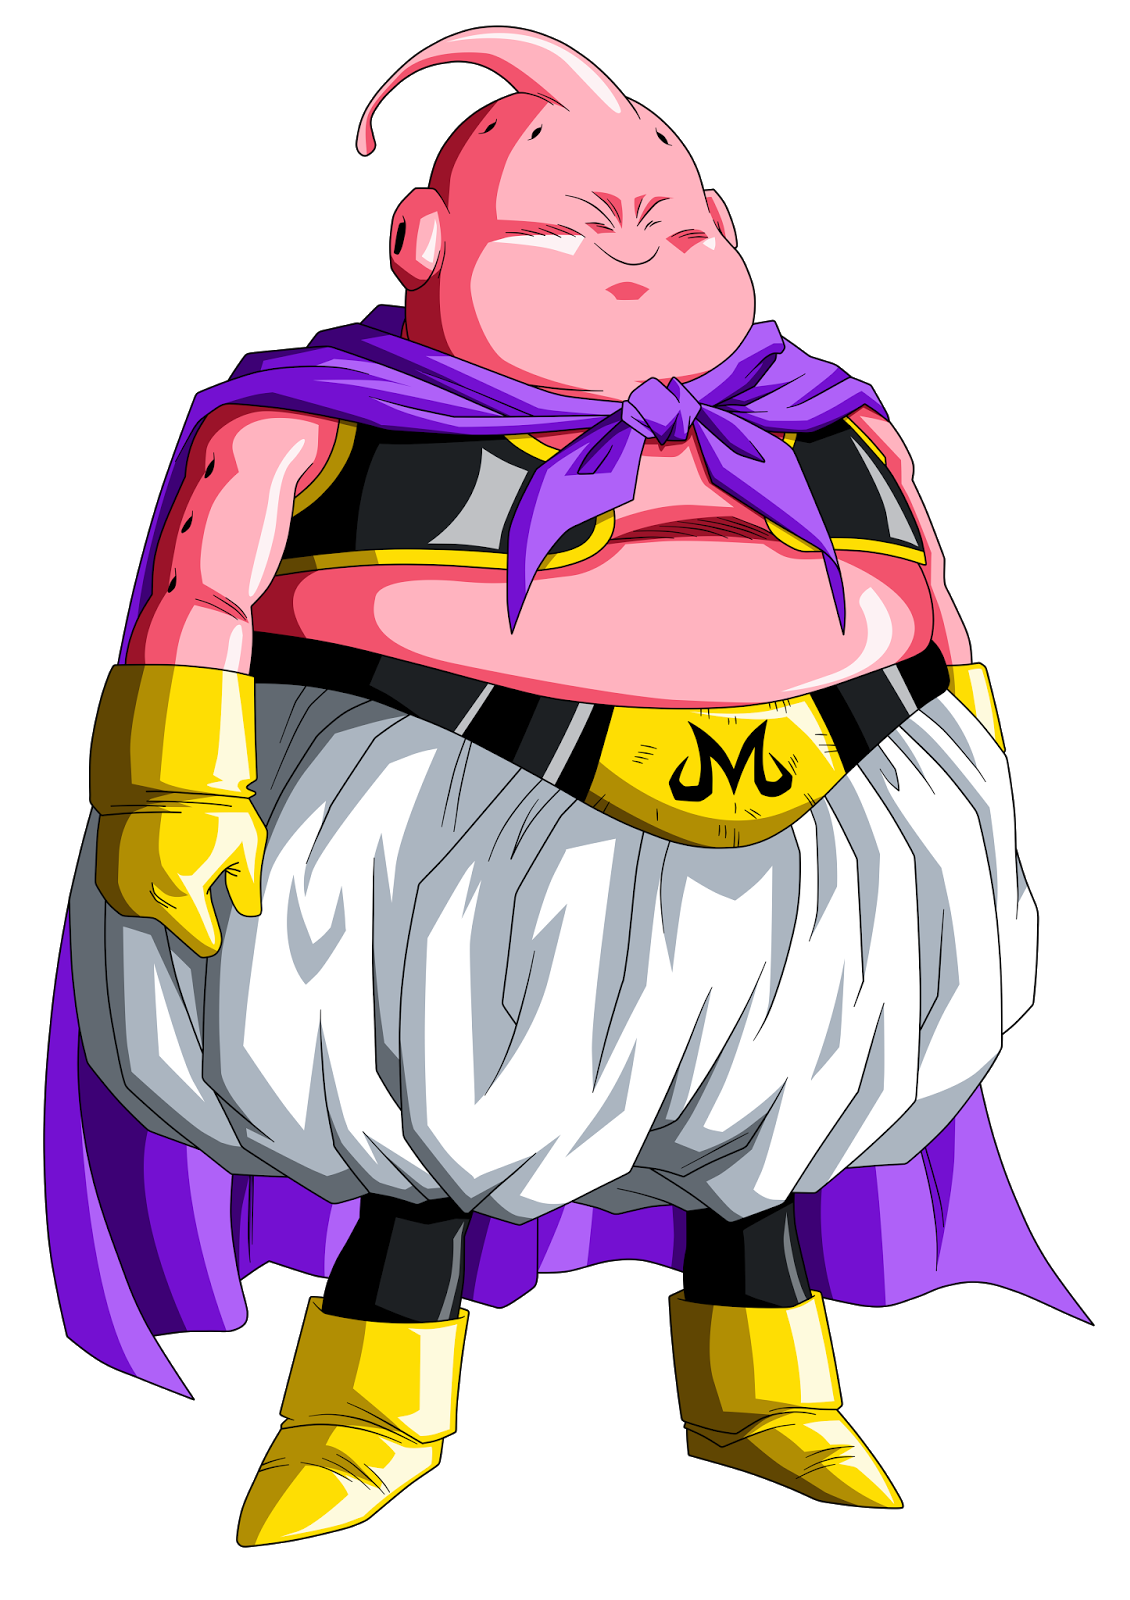 Madimbu personagem do Dragon Ball muito forte